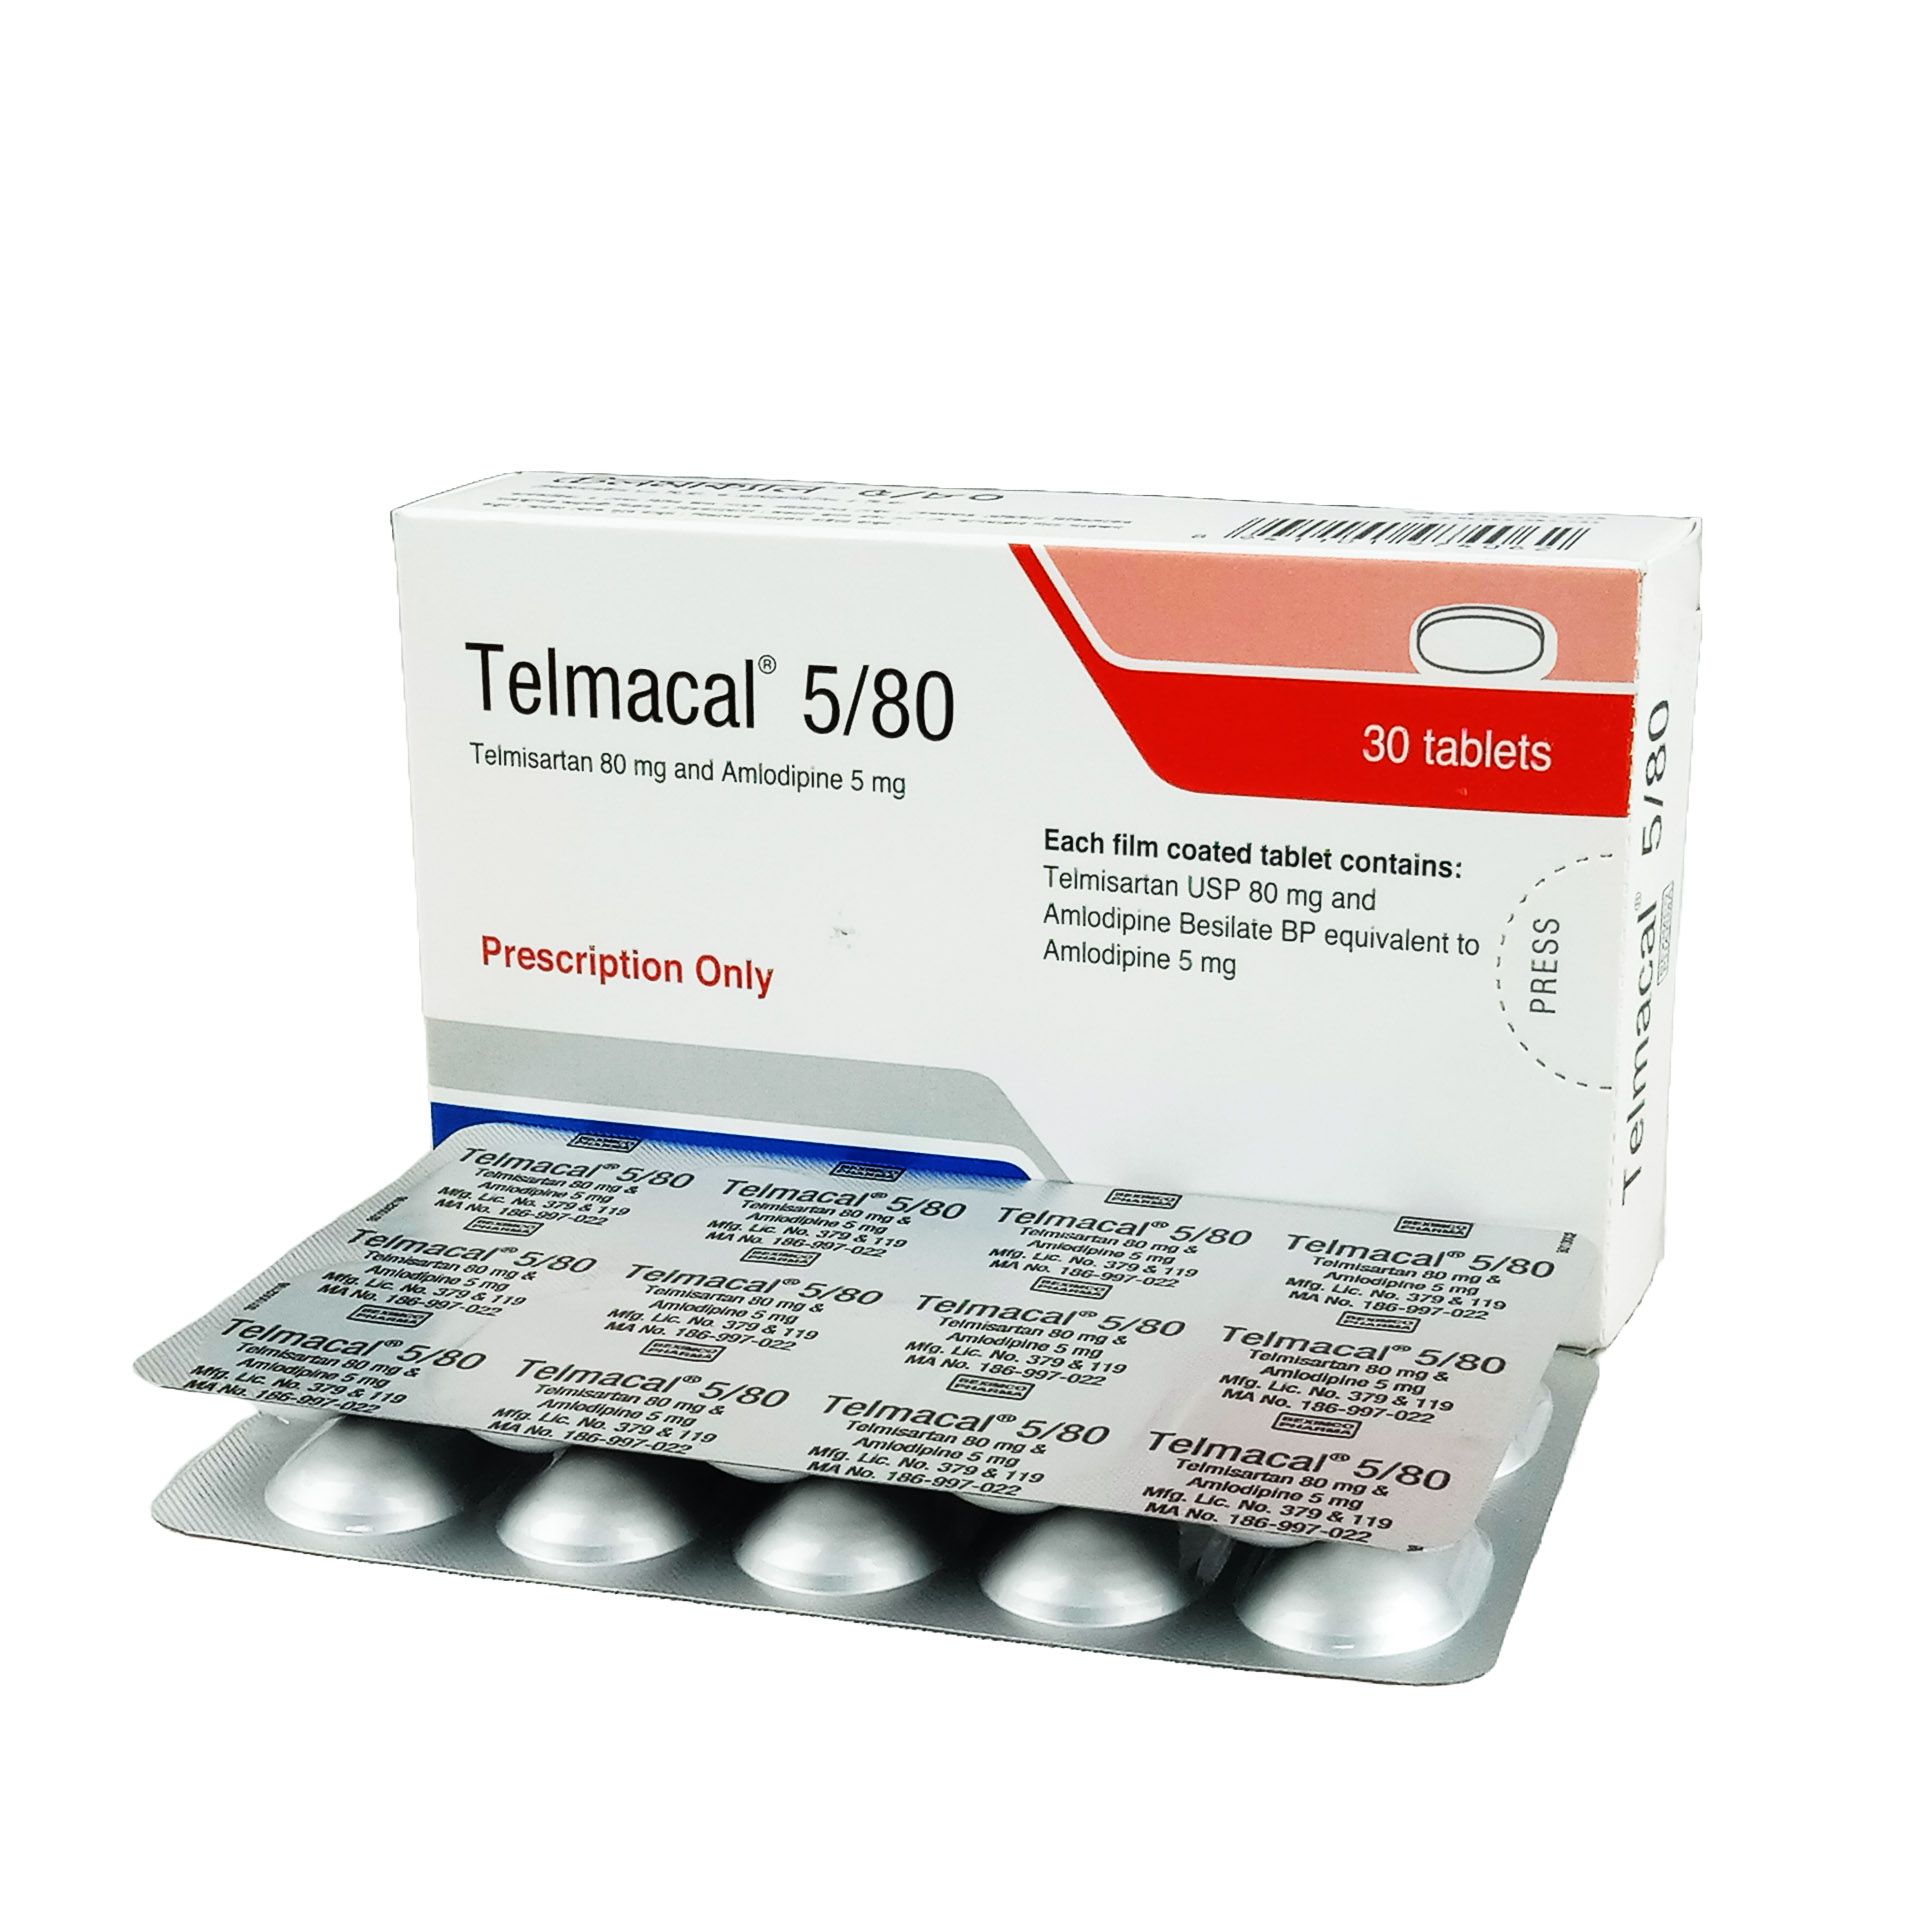 Telmacal 80/5 80mg+5mg Tablet